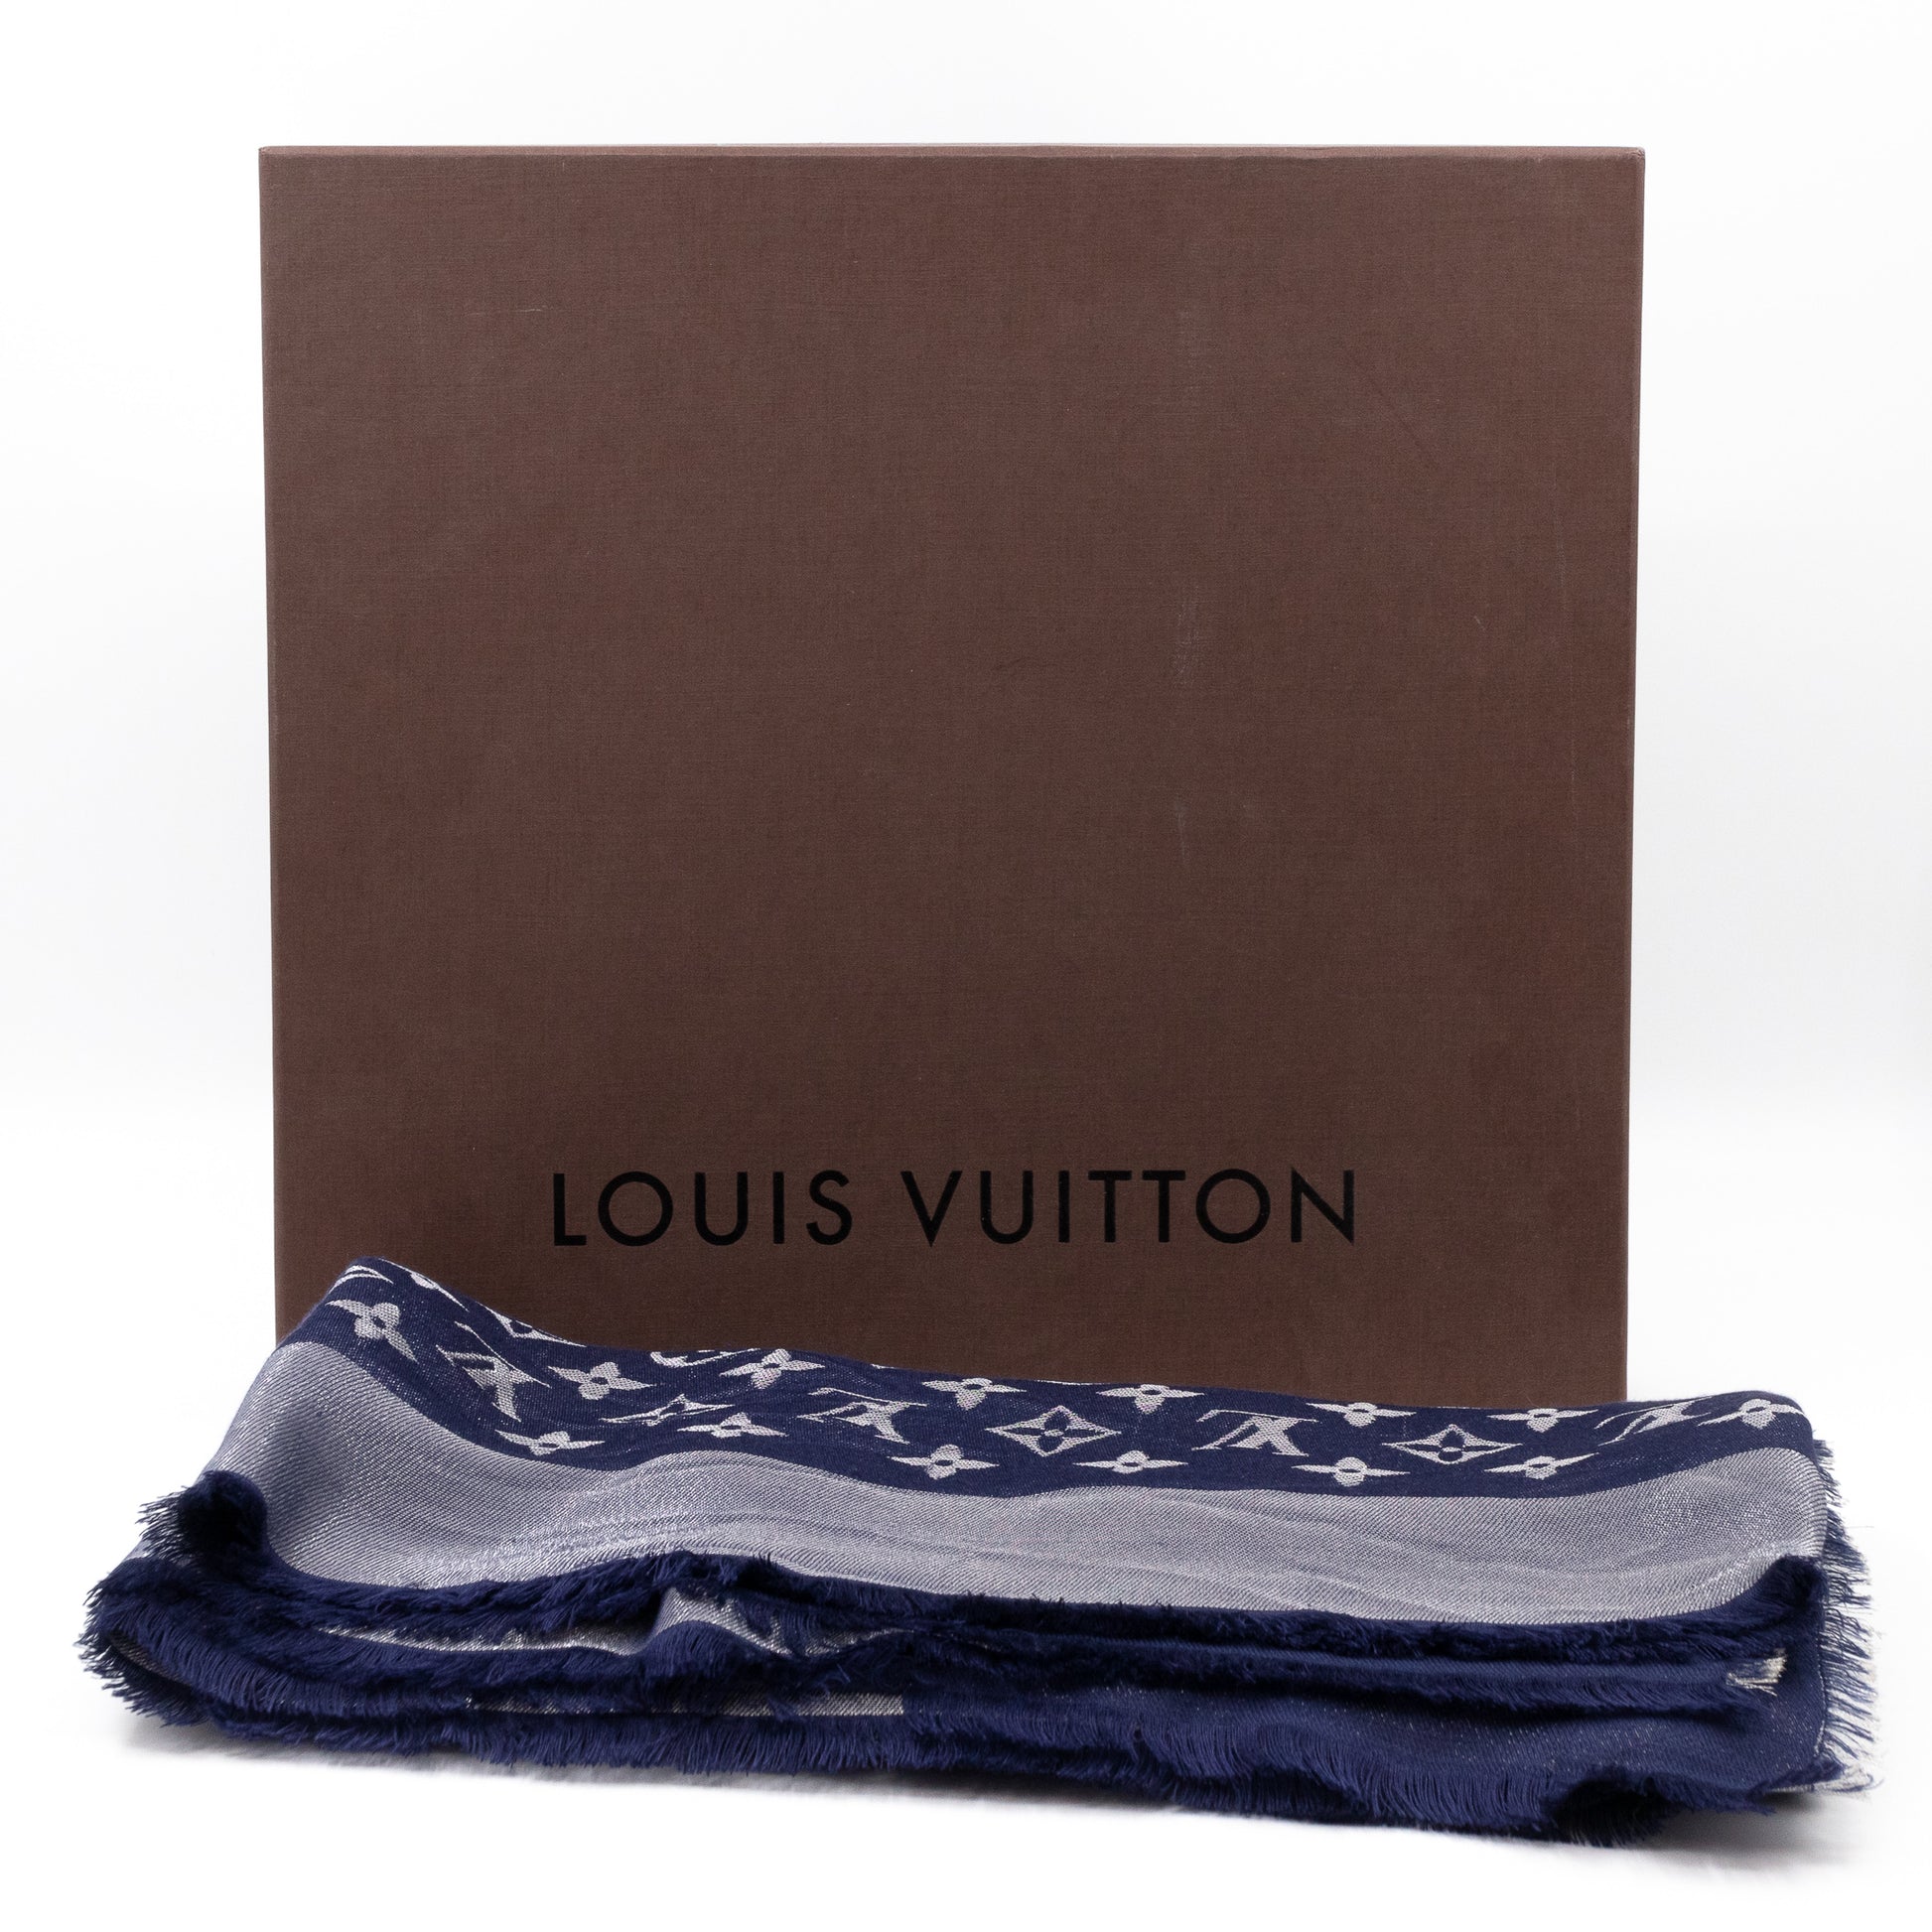 louisvuitton #unboxing#monogram#shineshawl#LV#huivi#silkscarf